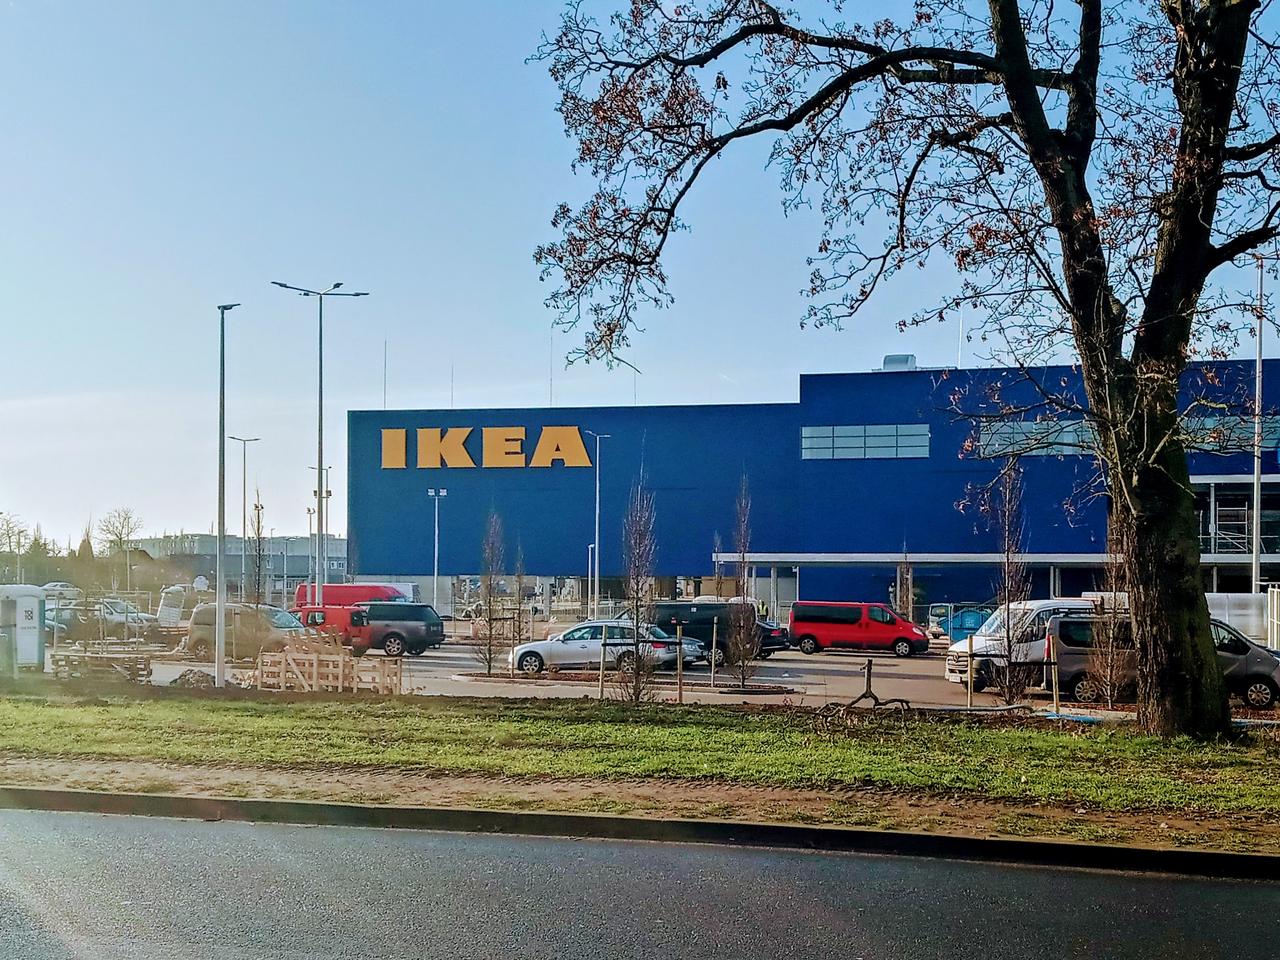 Ikea W Szczecinie Prawie Na Finiszu Kiedy Otwarcie Sprawdz Oferty Pracy Zdjecia Szczecin Super Express